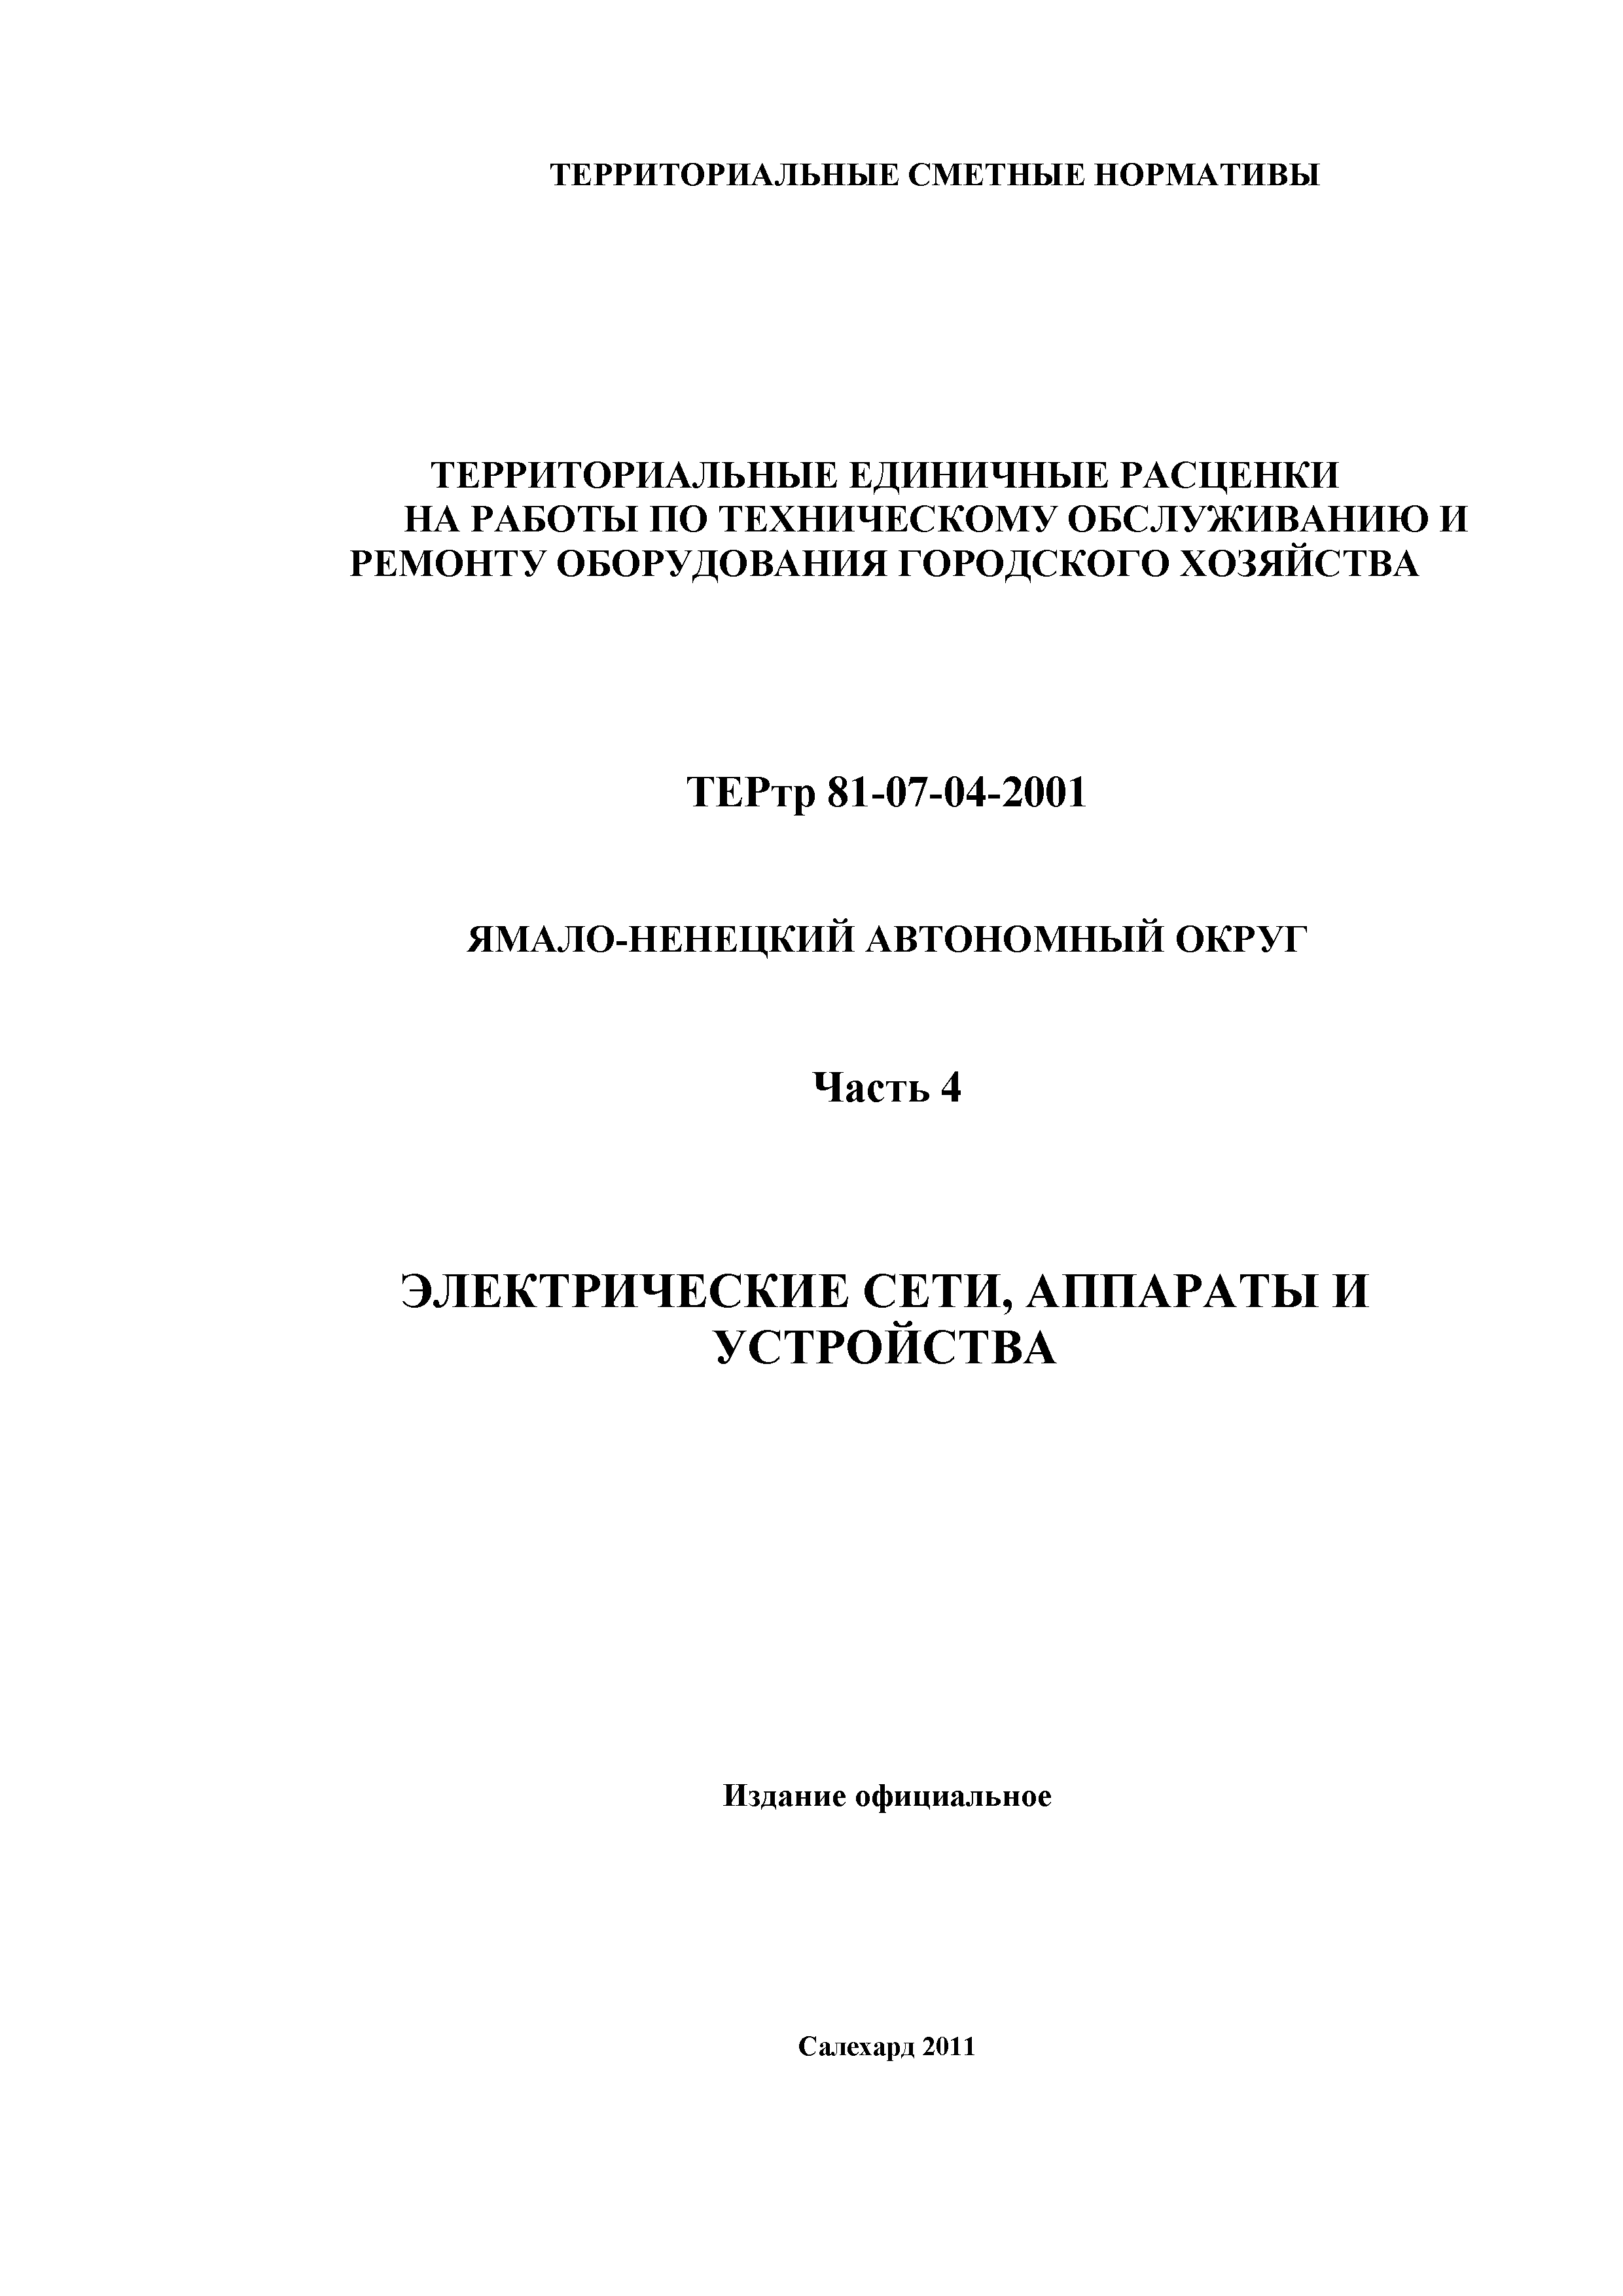 ТЕРтр Ямало-Ненецкий автономный округ 04-2001